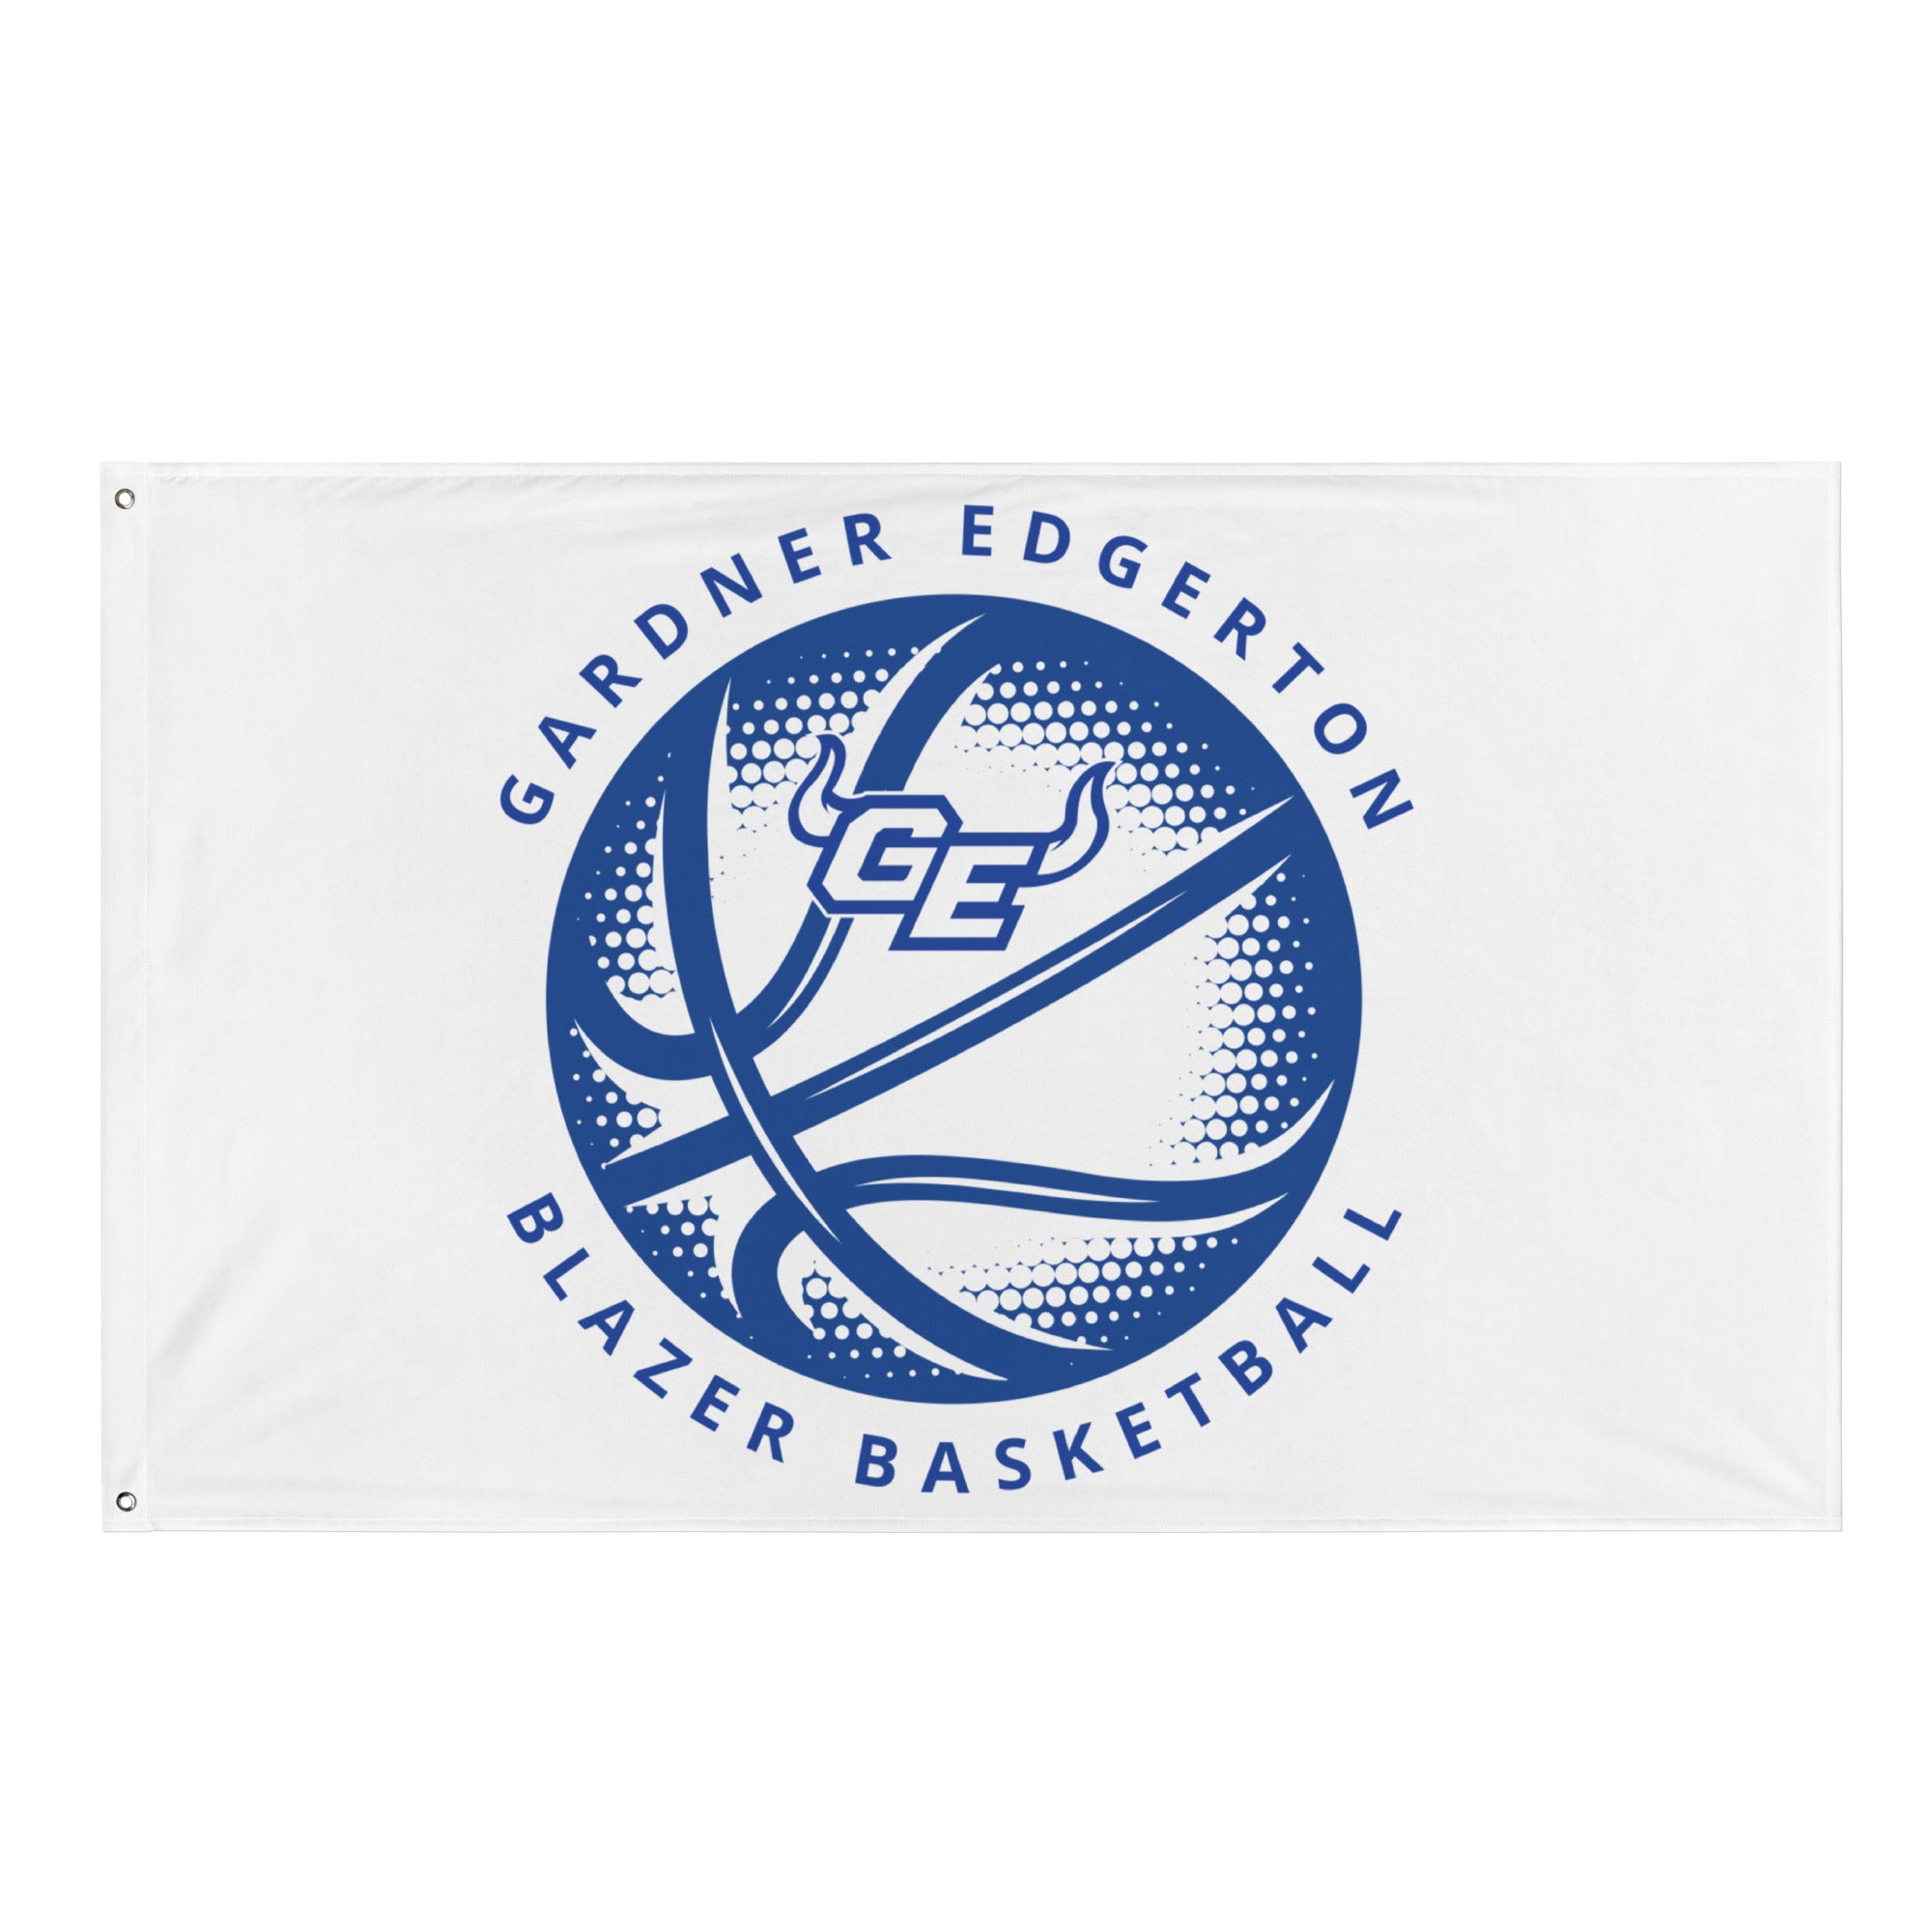 Gardner Edgerton Girl's Basketball All-Over Print Flag